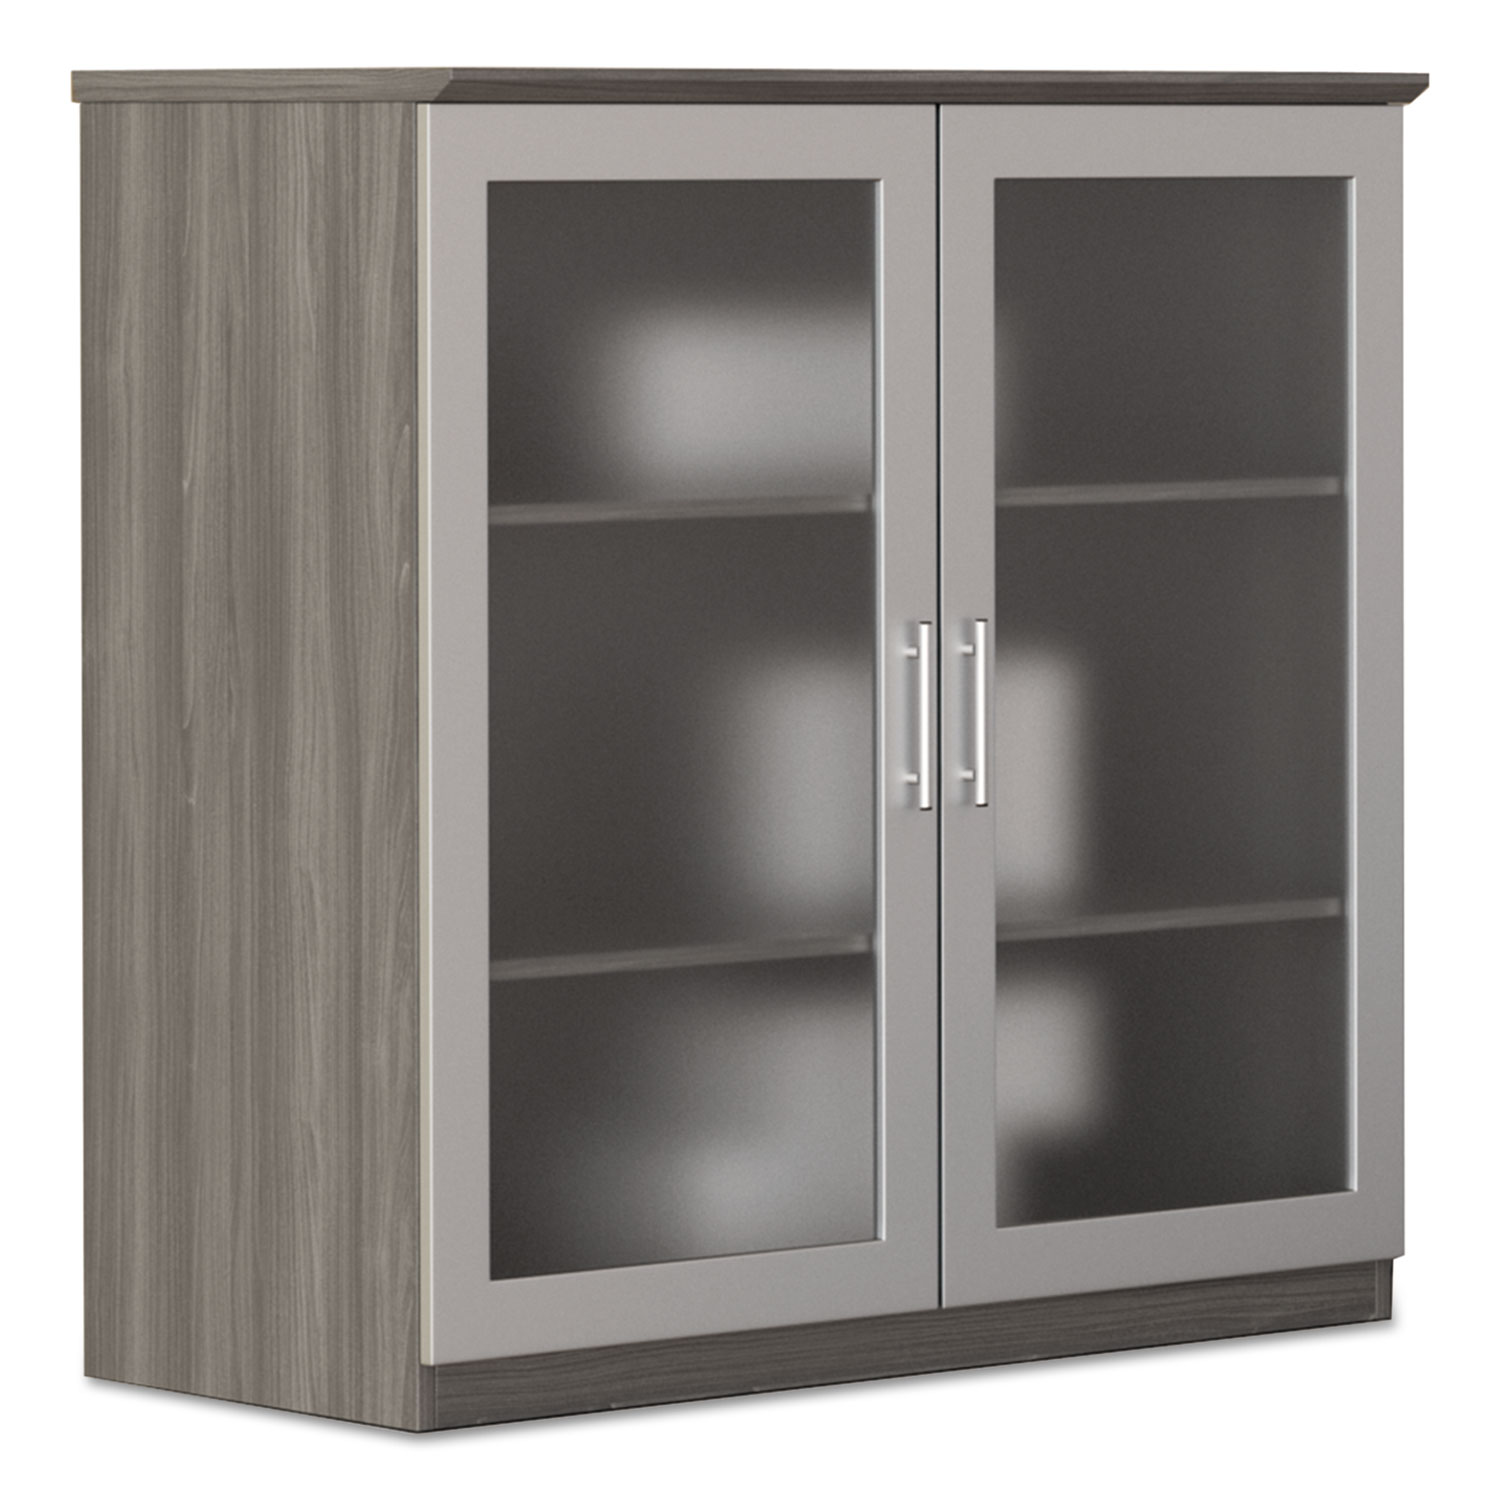 Medina Series Glass Display Cabinet, 36 w x 20d x 39 1/4h, Gray Steel